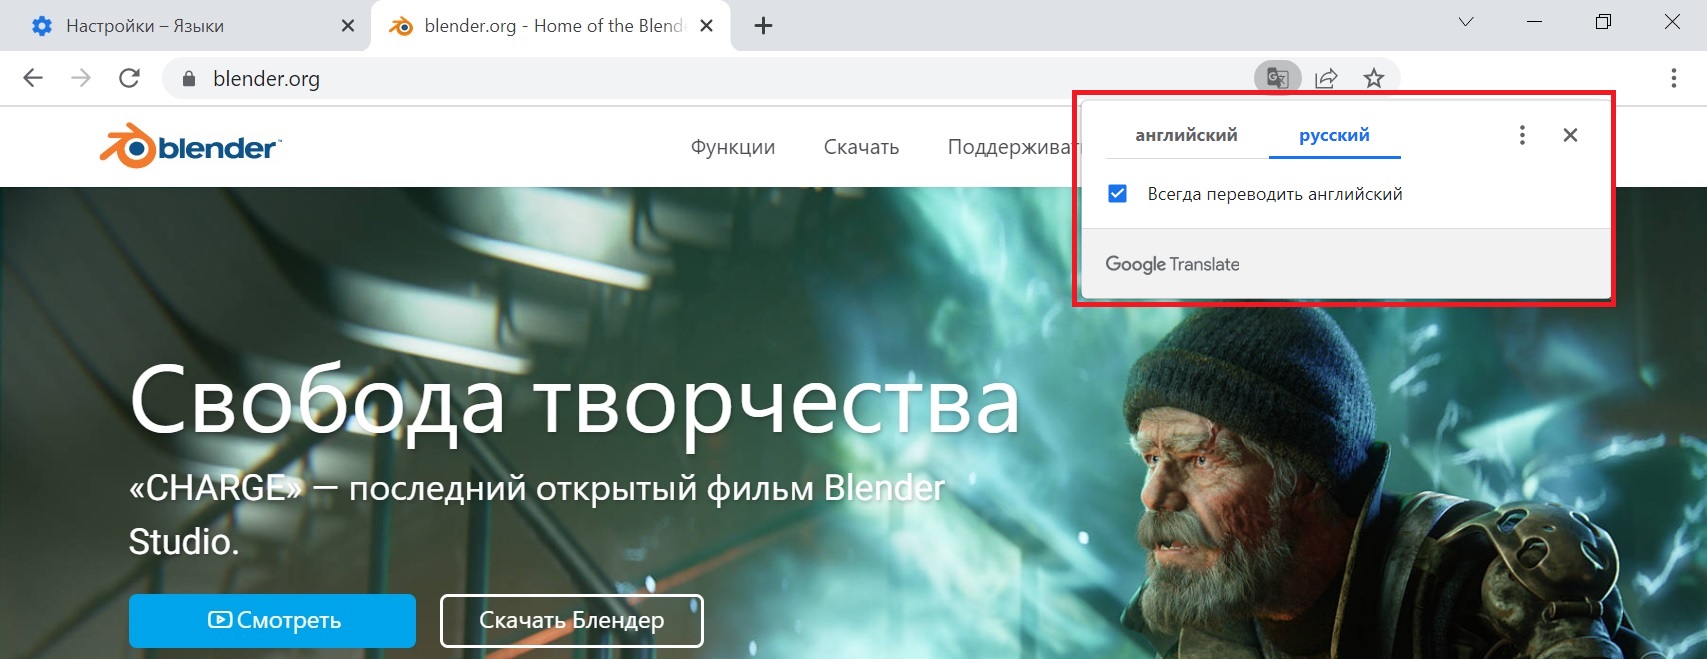 перевод на русский язык в гугл хроме